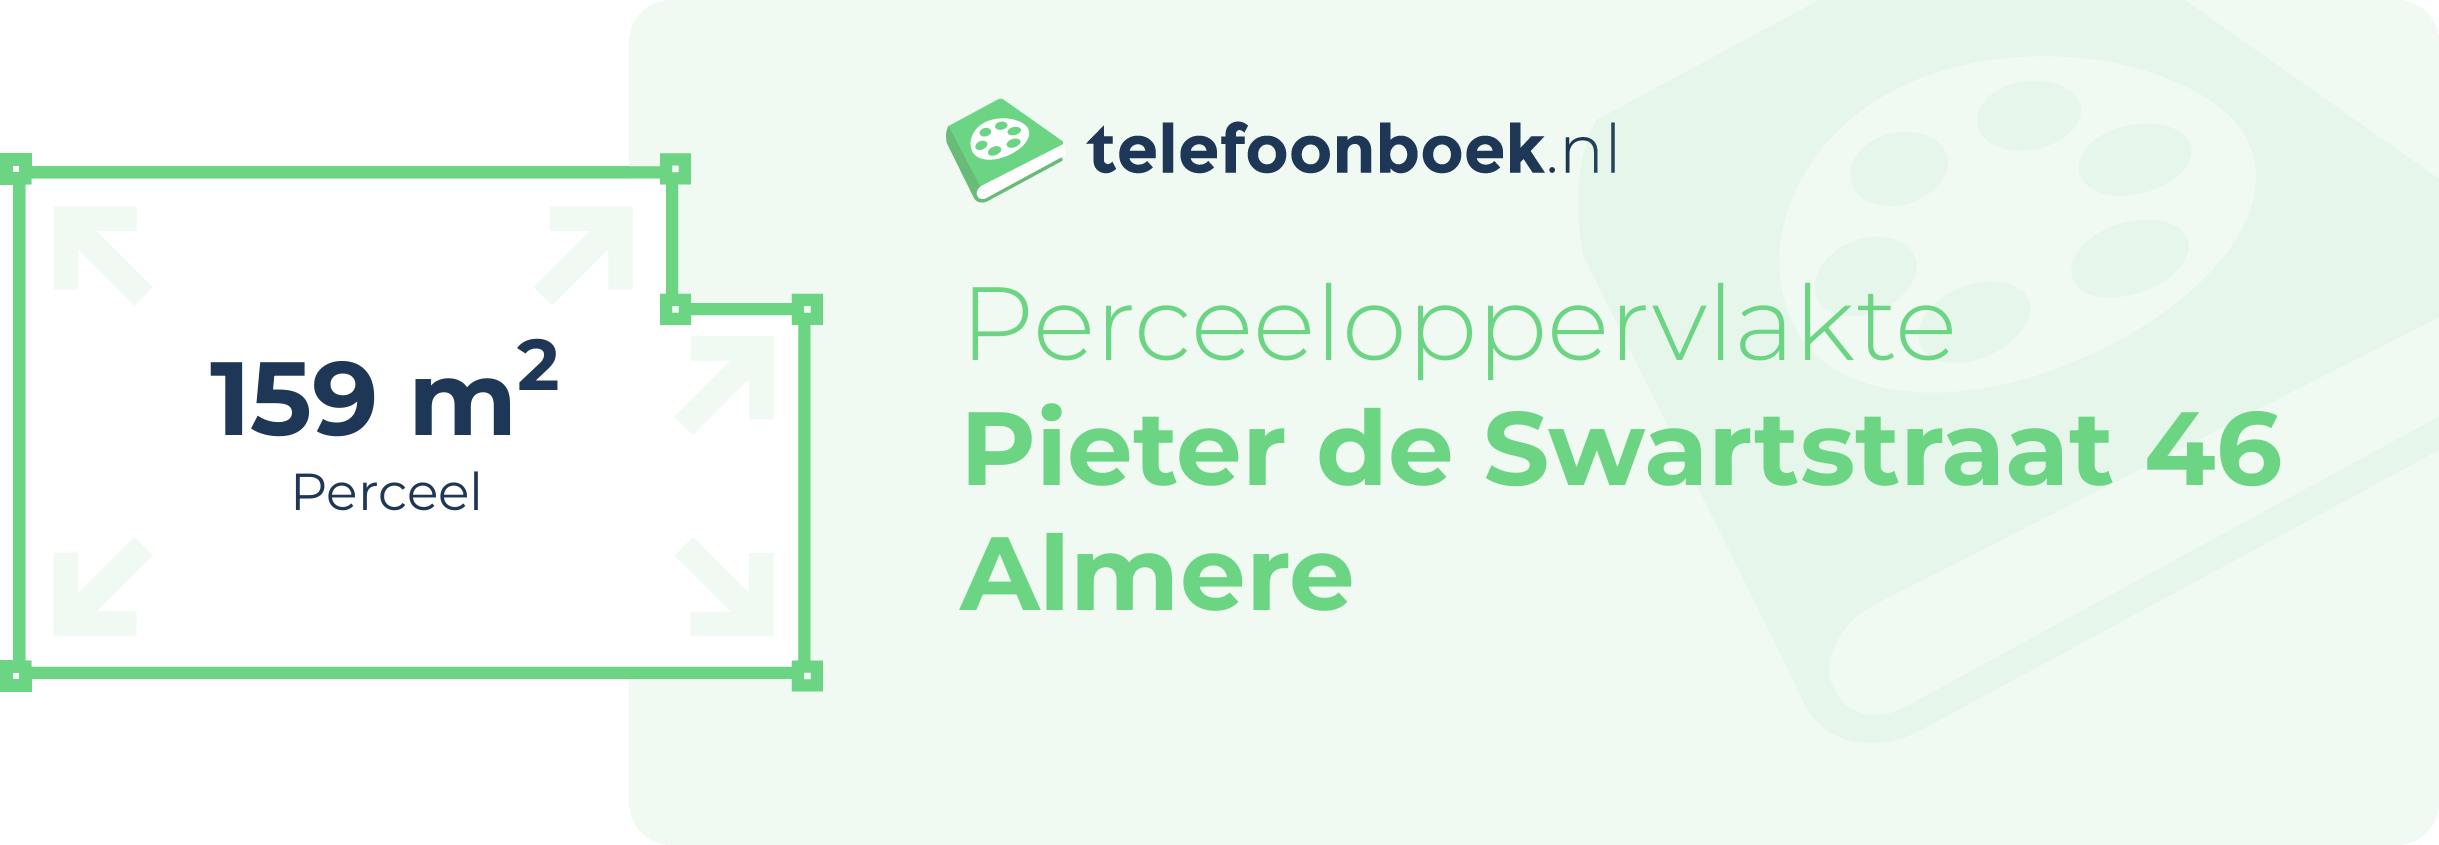 Perceeloppervlakte Pieter De Swartstraat 46 Almere